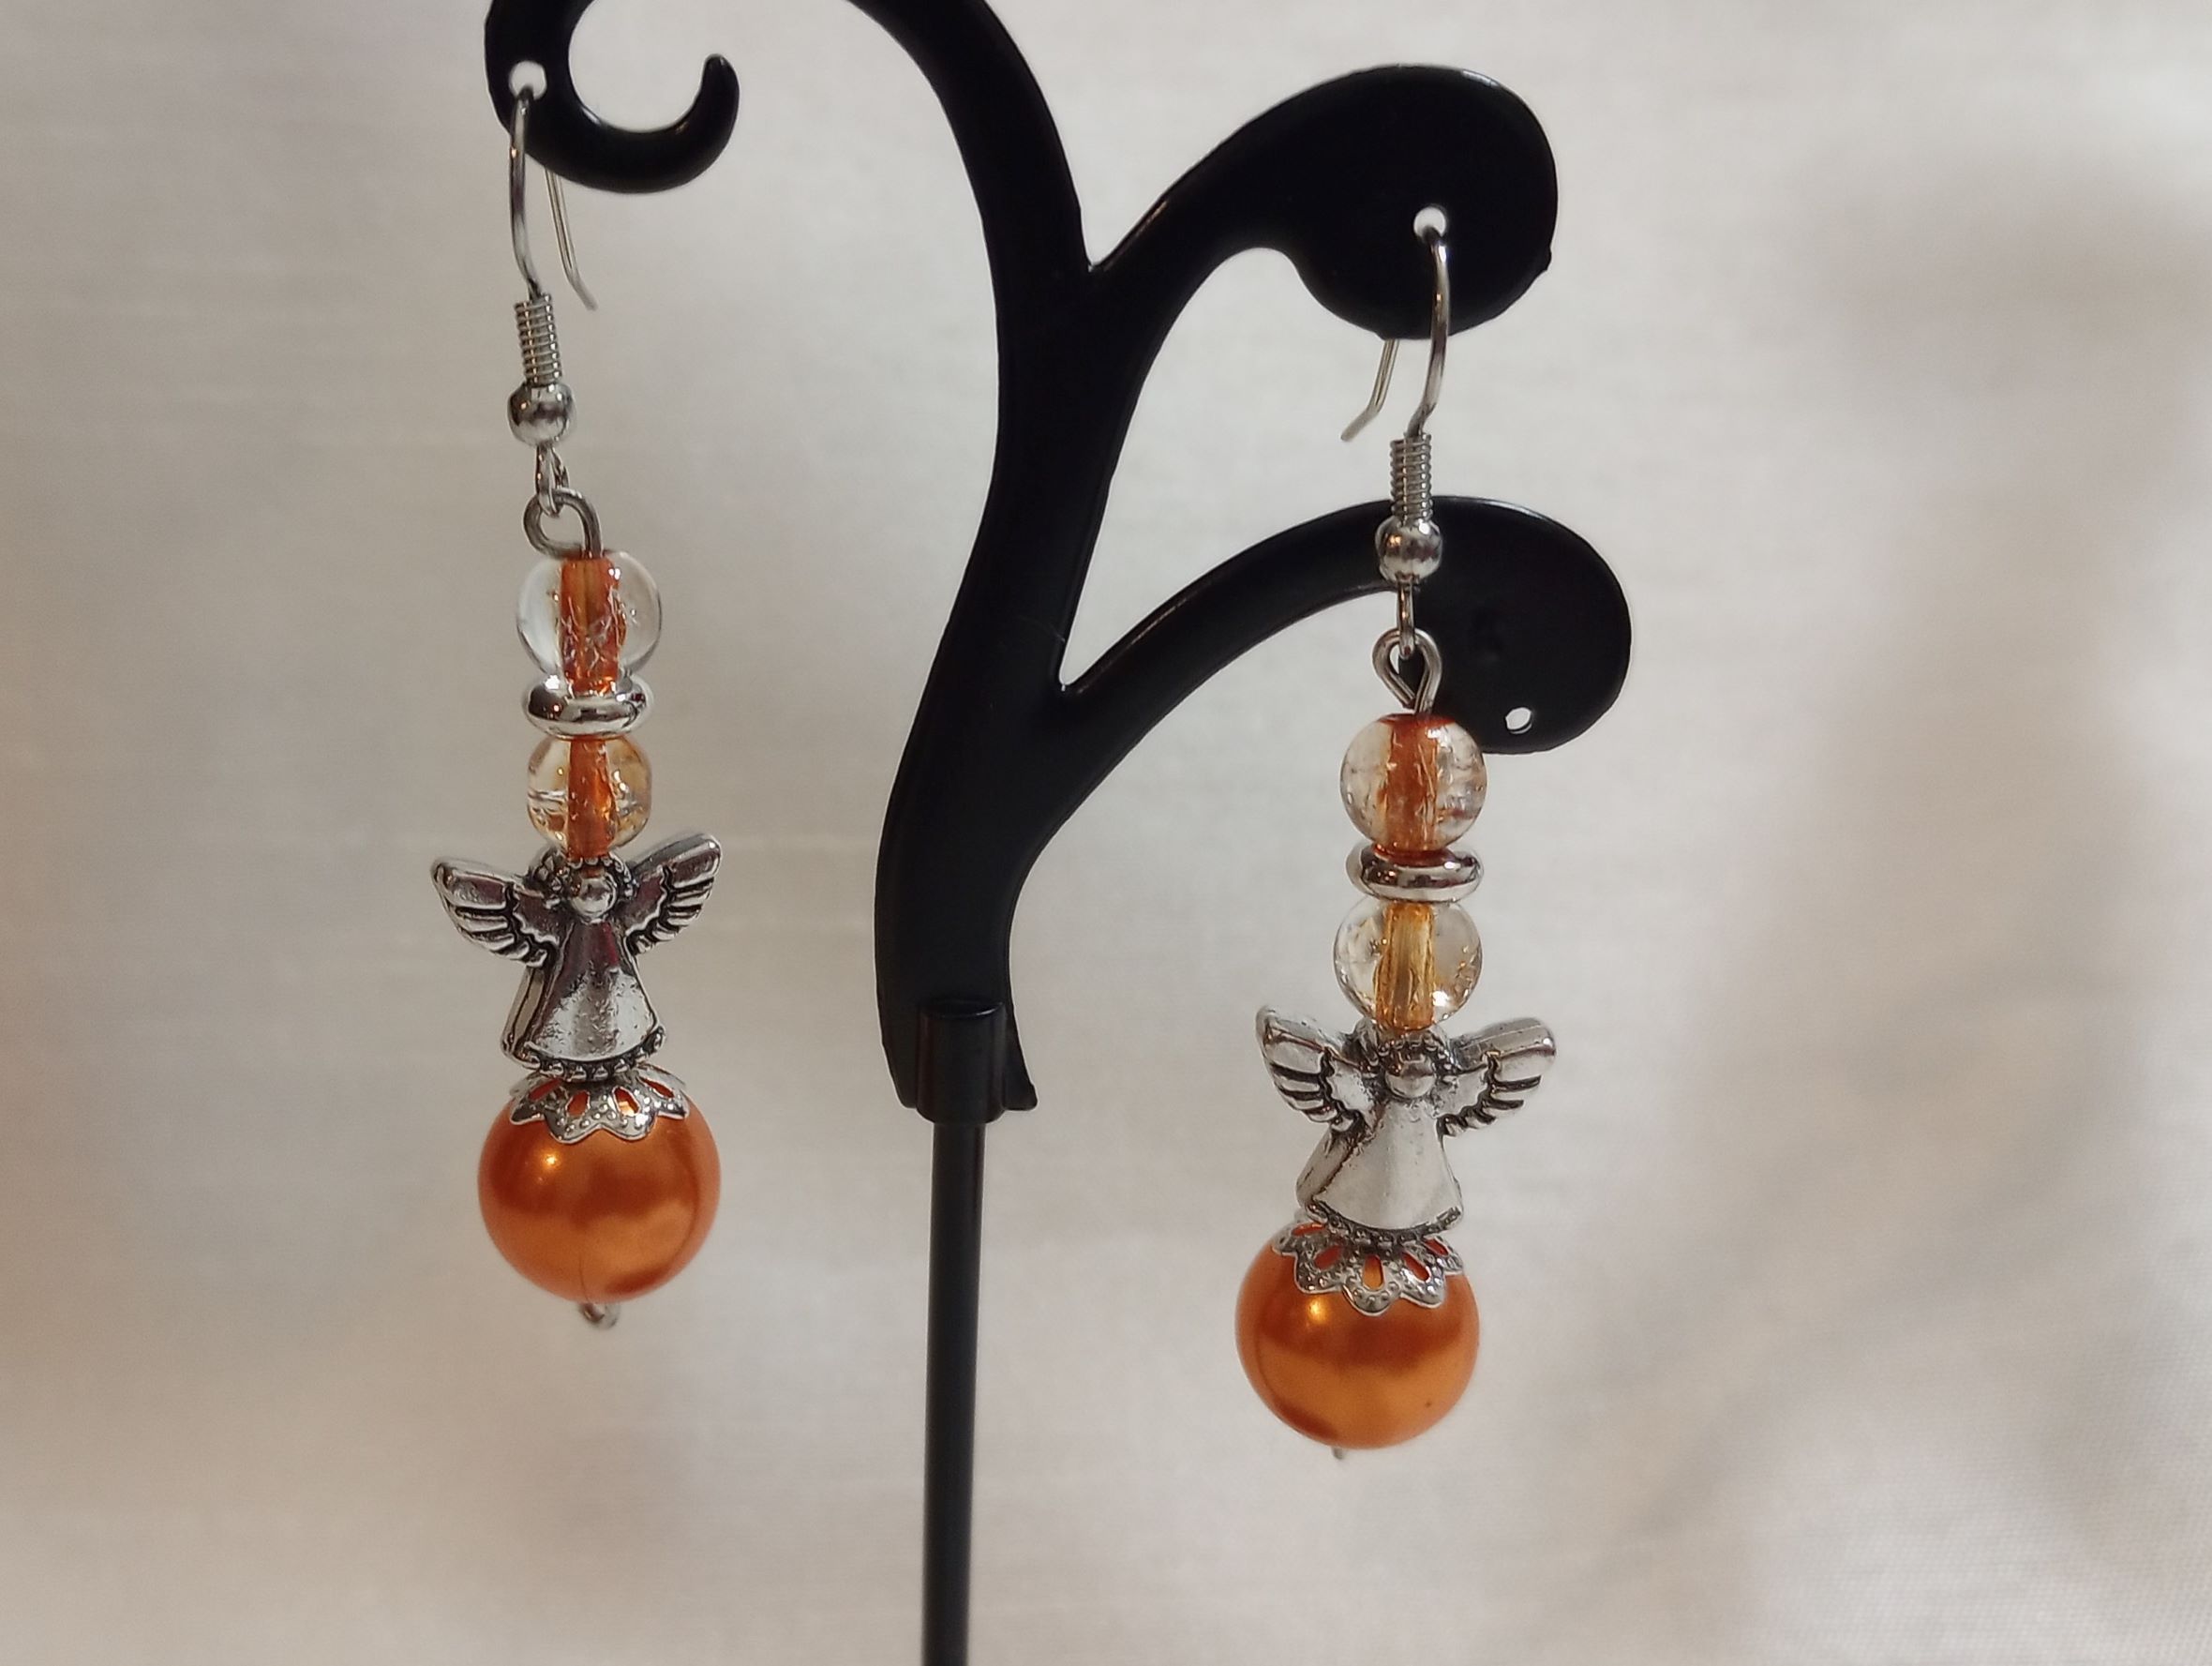 A – Orange Angel Earrings